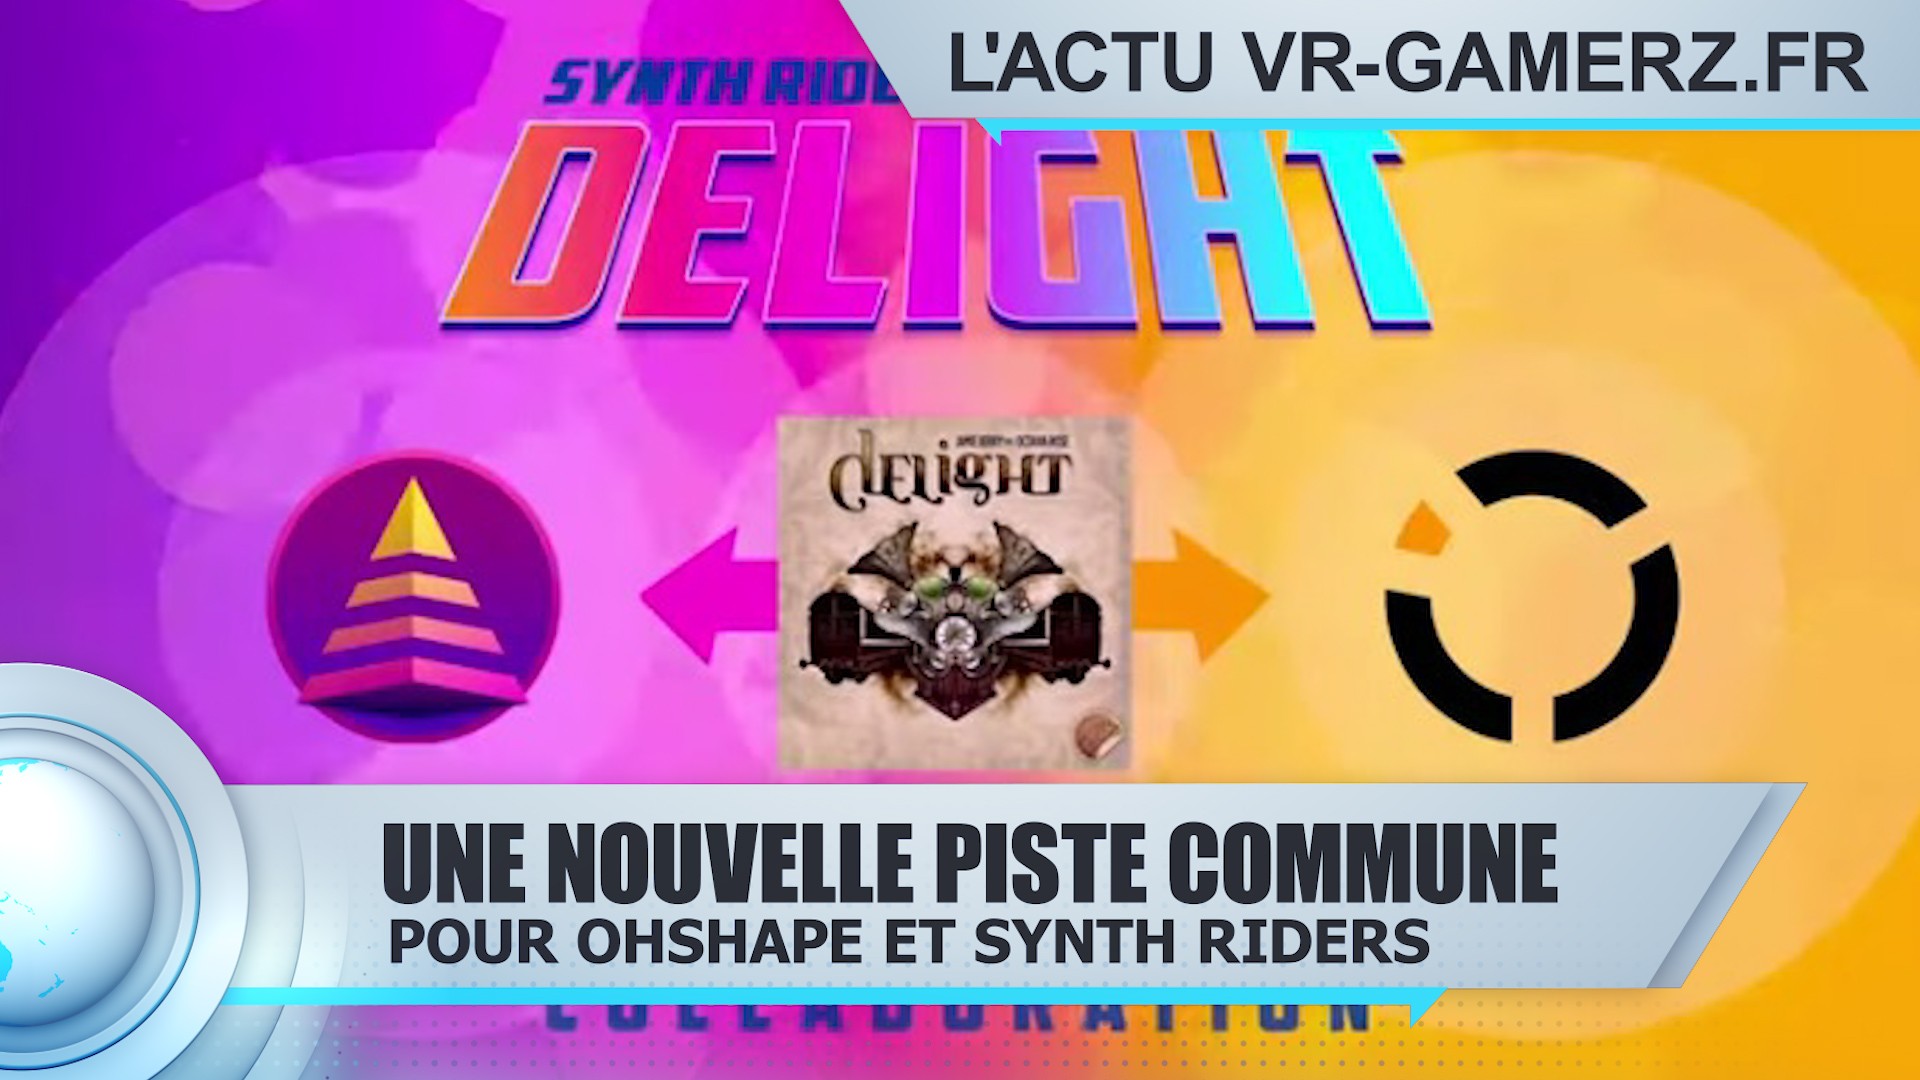 Une nouvelle piste commune pour Ohshape et Synth riders